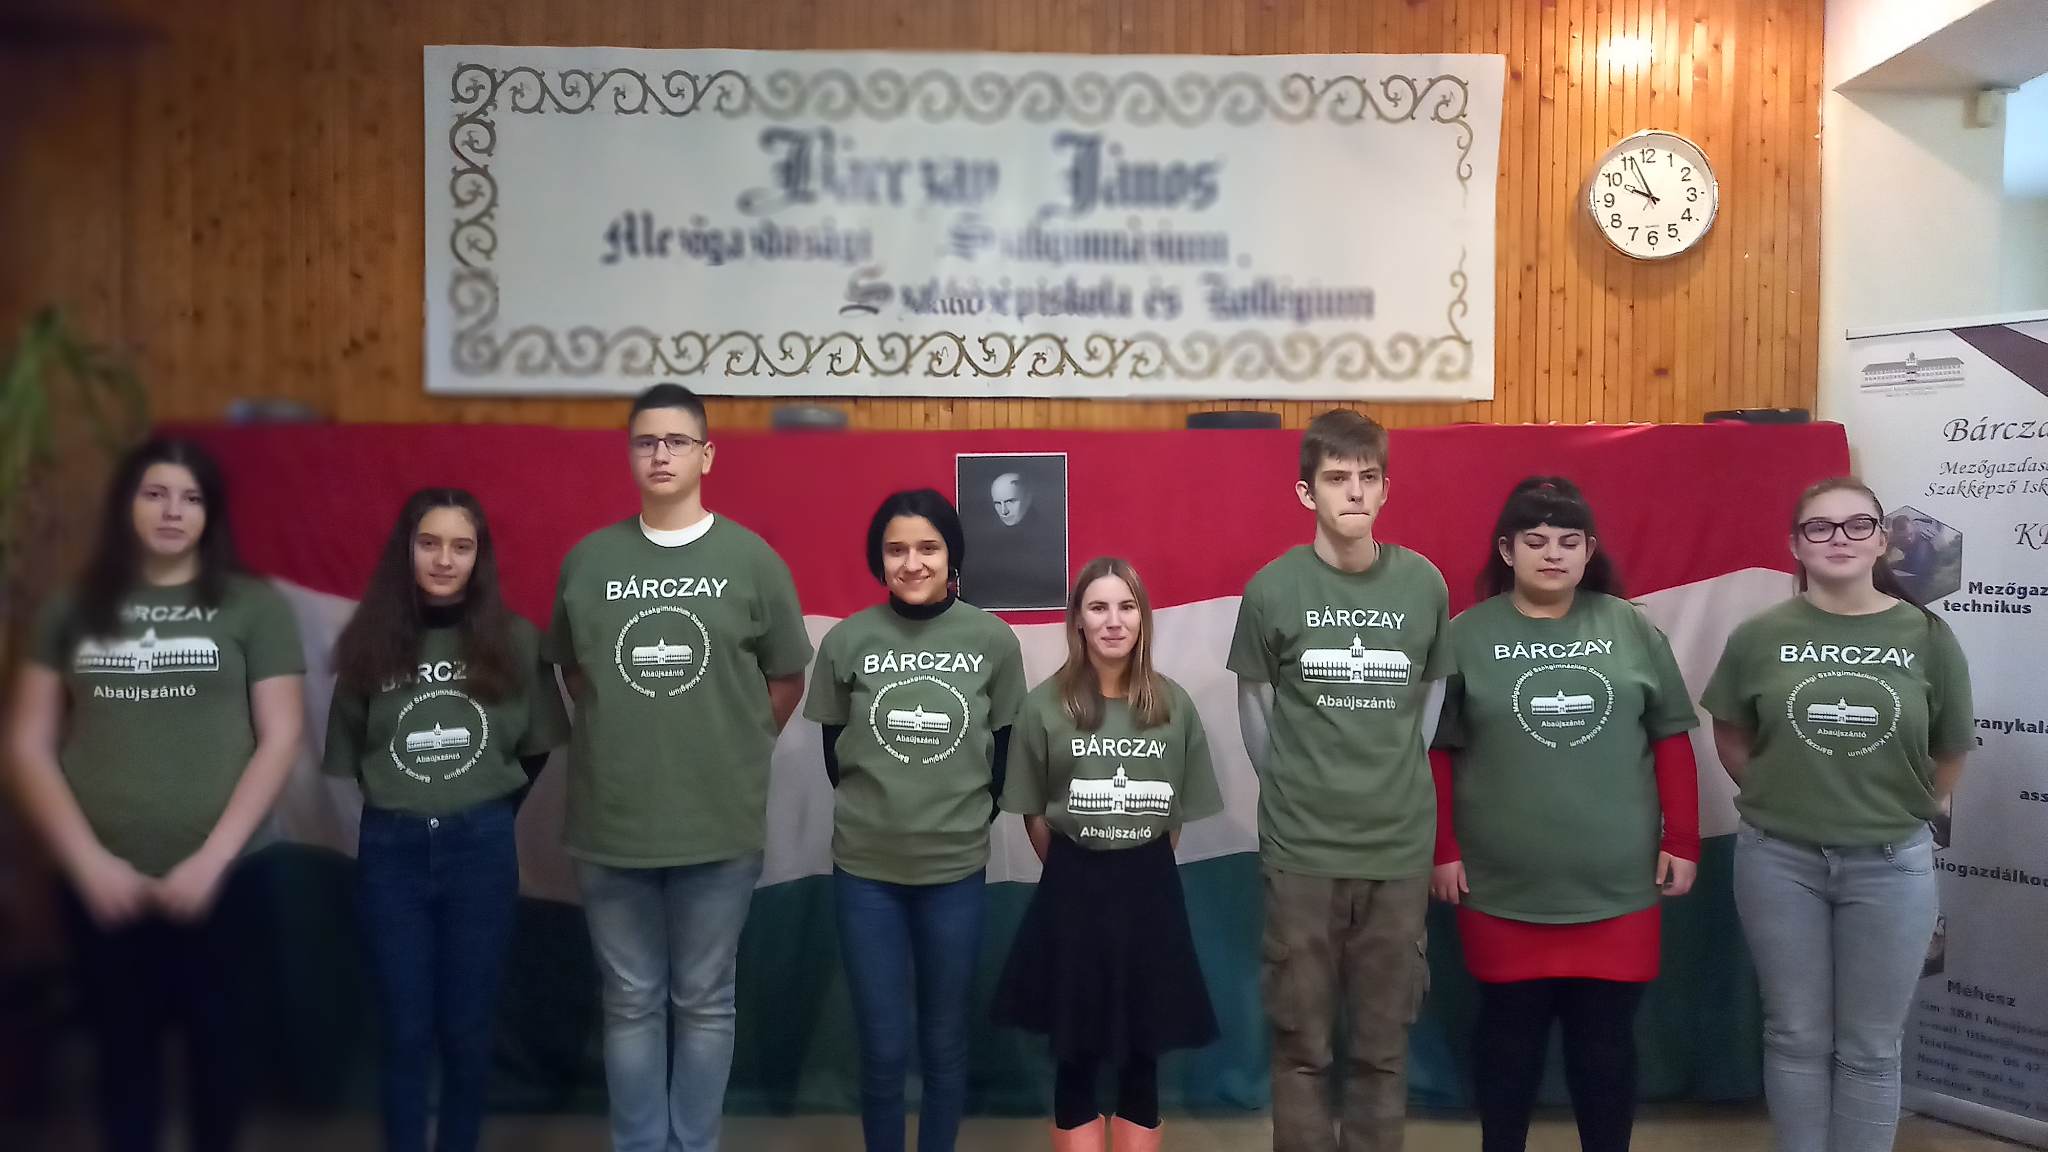 Fiatal felnőttek csoportja, akik "barczay" logóval ellátott zöld pólót viselnek, és egy inspiráló idézettel ellátott transzparens alatt állnak a hallban.